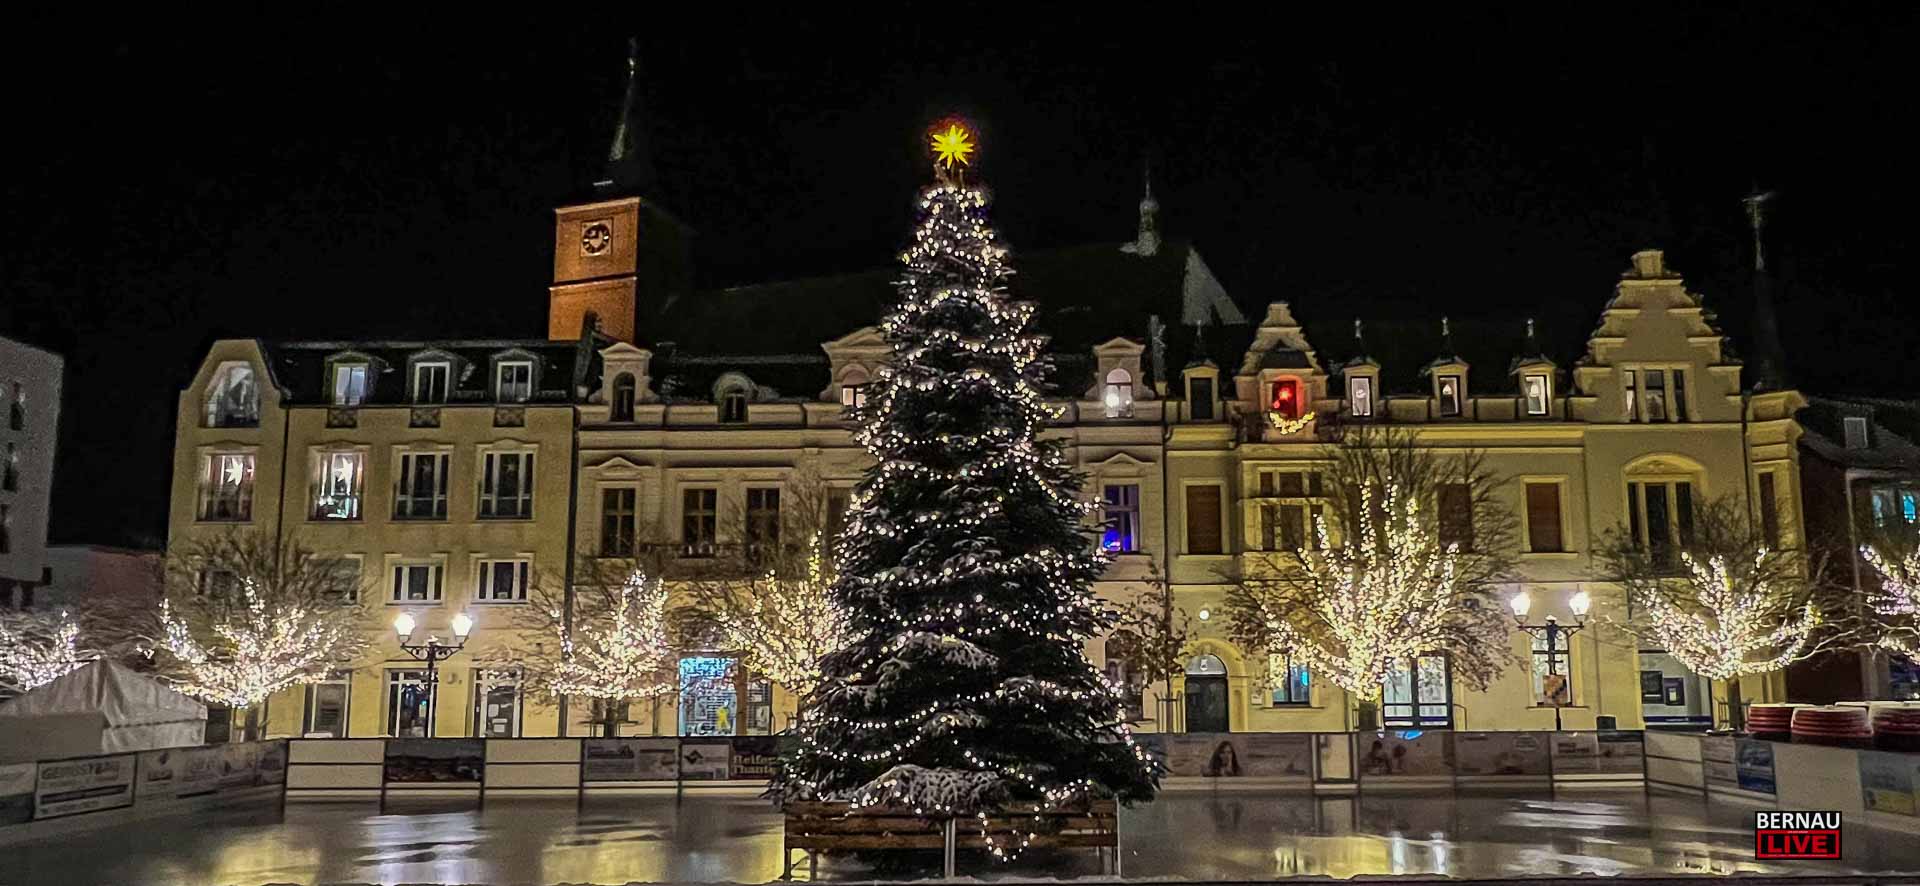 Bernau: Weihnachtsbaum und Weihnachtsbeleuchtung eingeschalten